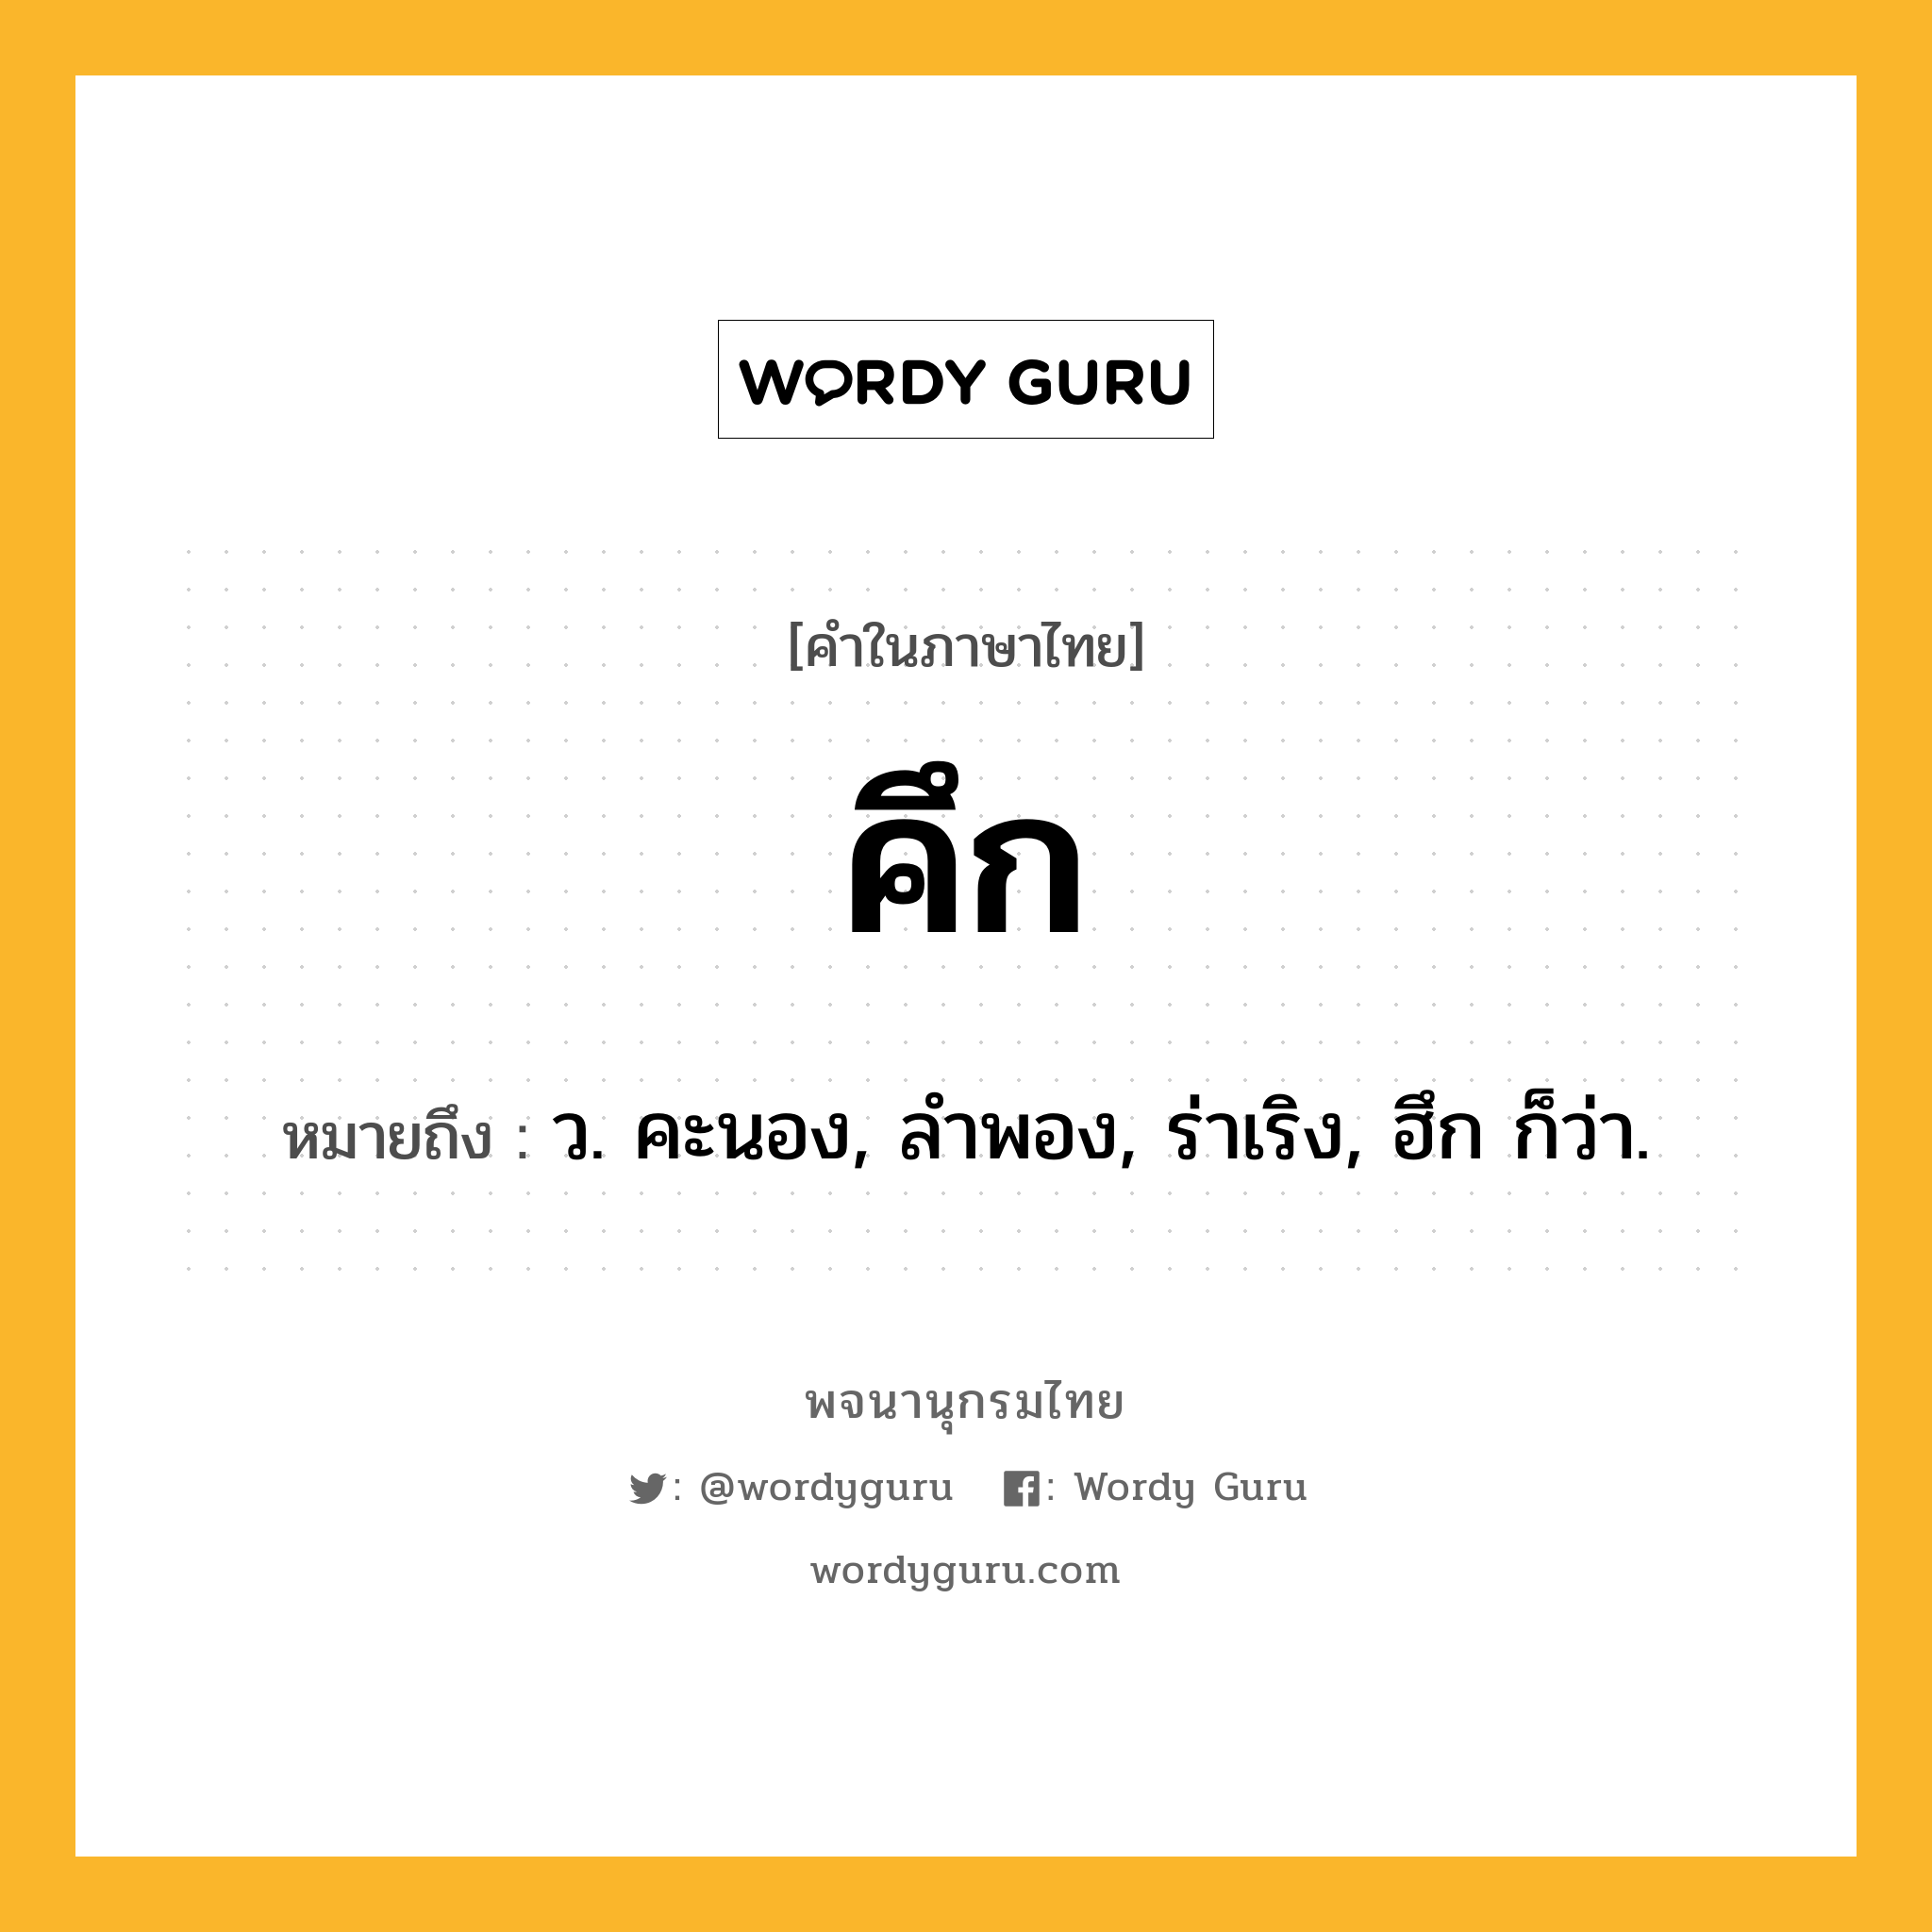 คึก หมายถึงอะไร?, คำในภาษาไทย คึก หมายถึง ว. คะนอง, ลําพอง, ร่าเริง, ฮึก ก็ว่า.